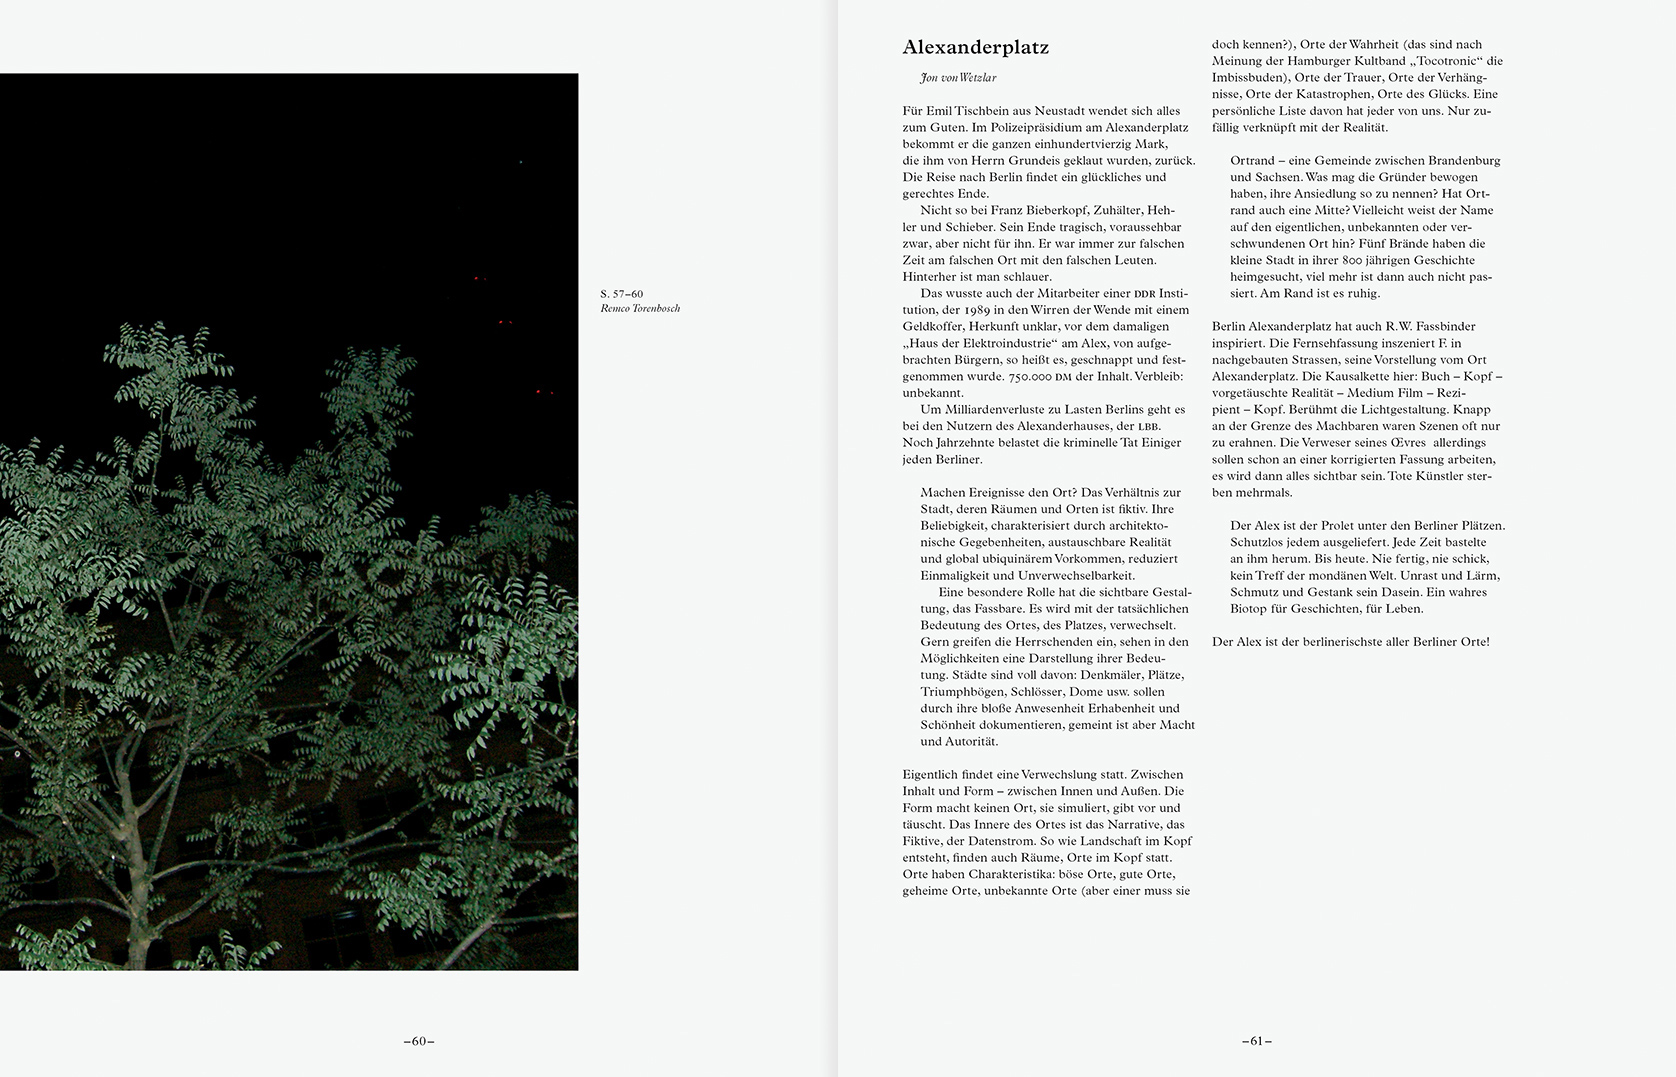 julia marquardt ein magazin ueber orte buecher & hefte verlag gestaltung magazin magazine graphic design konzept concept herausgeber publisher